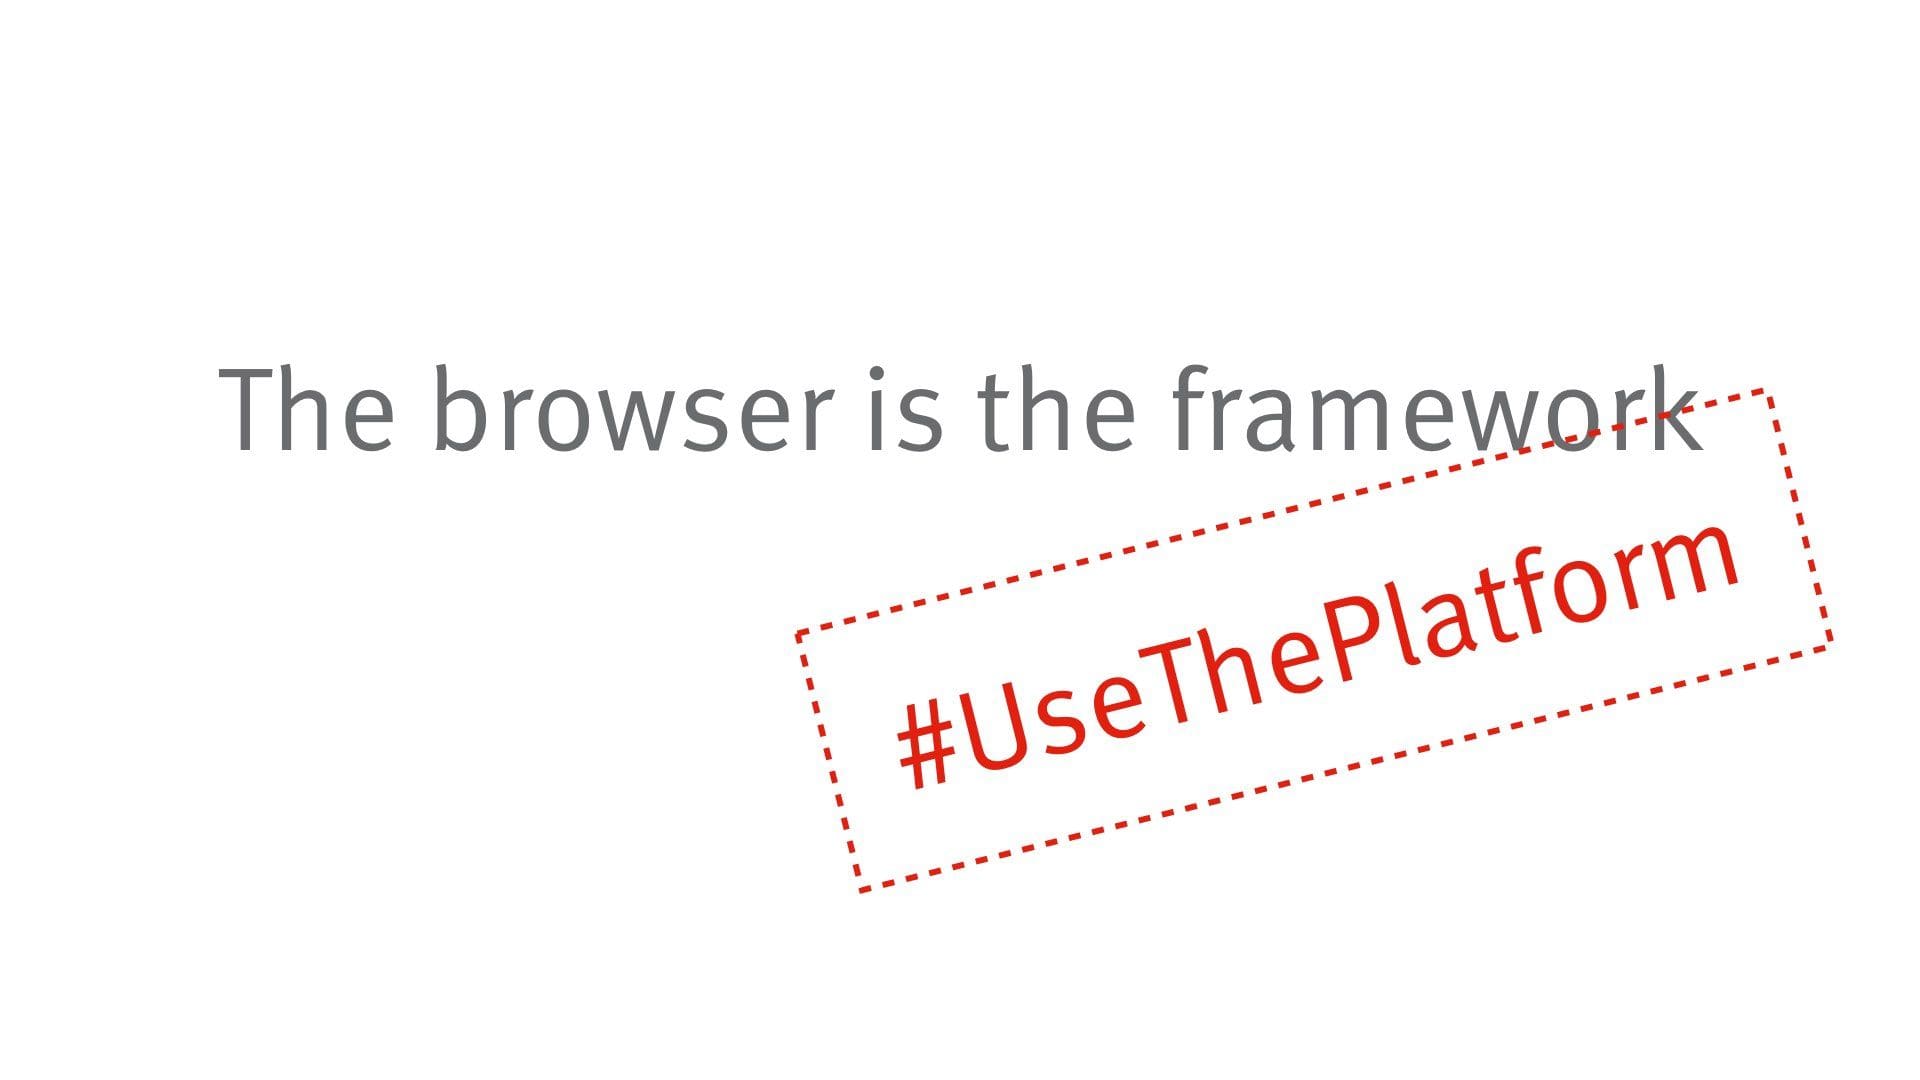 The browser is the framework #UseThePlatform